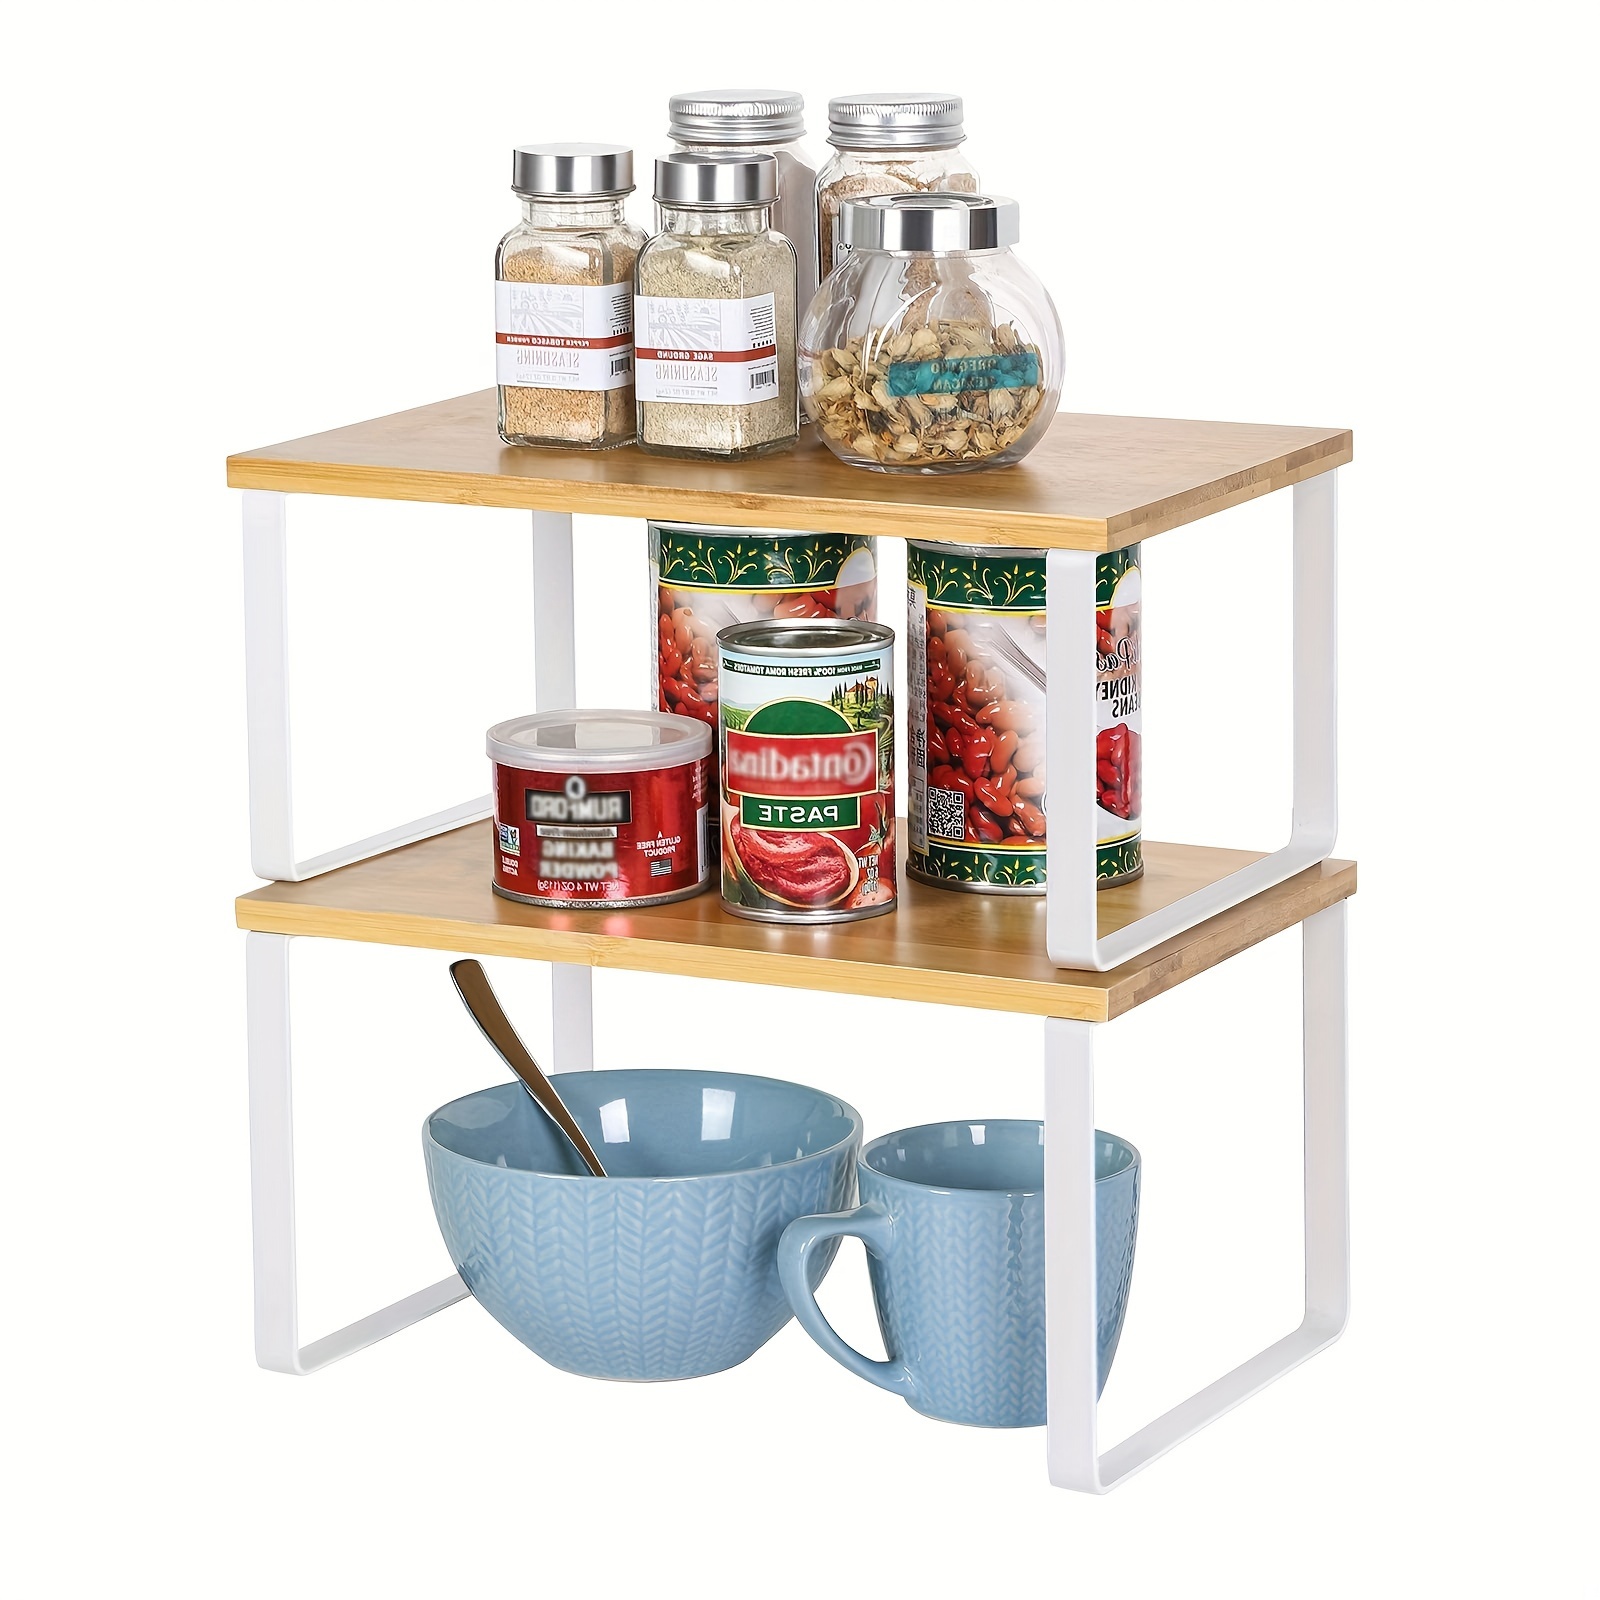 

2pcs/set Kitchen Counter Shelves, Cabinet Shelf Organizers, Stackable, Expandable Spice Racks, Stackable Kitchen Counter Shelves, Cabinet Pantry Shelf